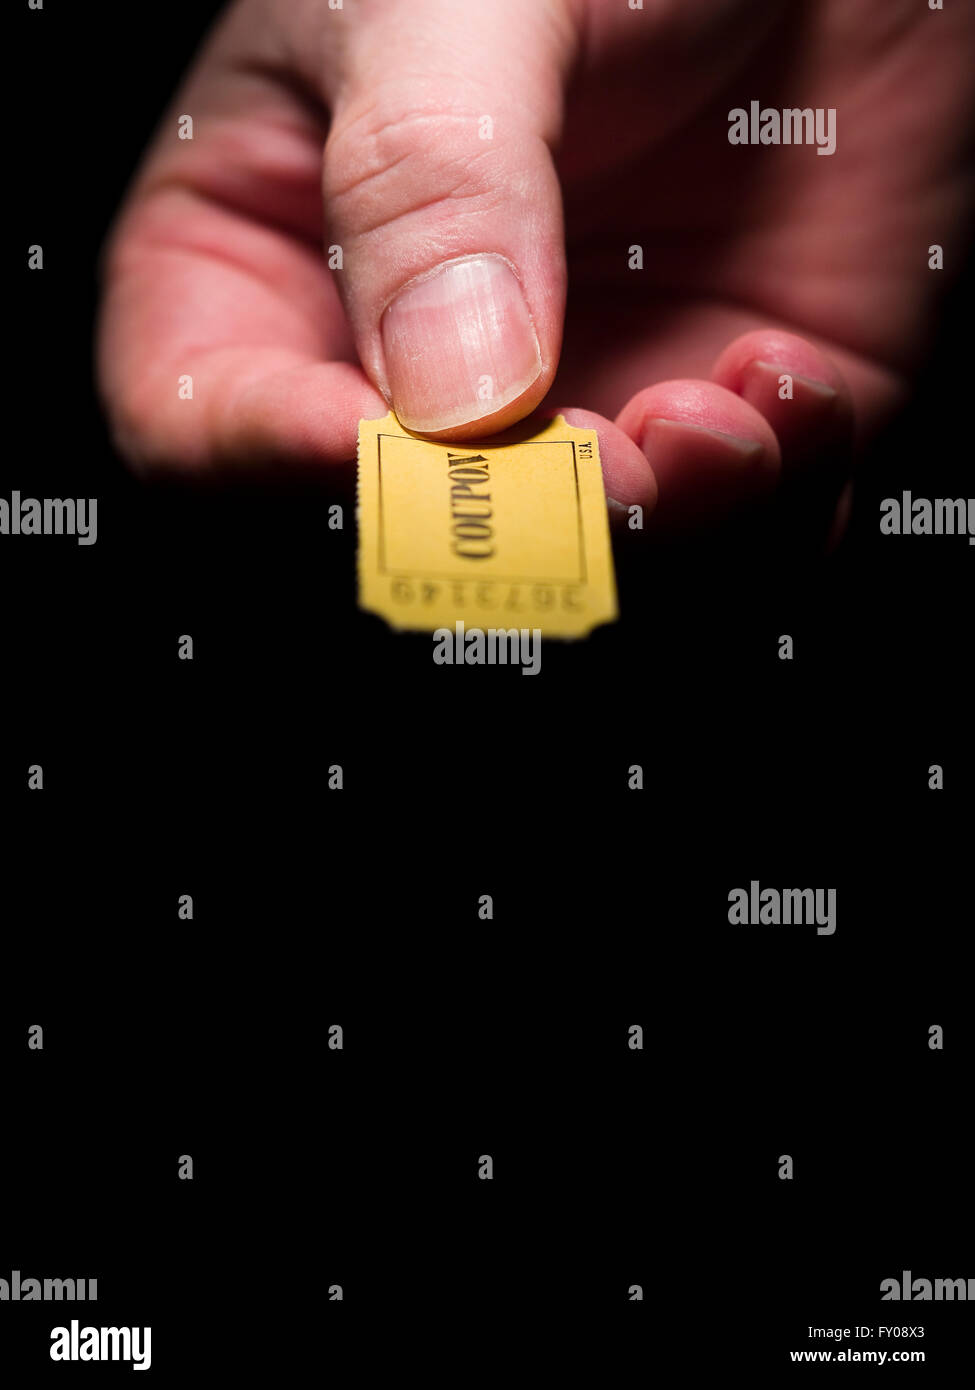 Ein Mann rechten Hand ein gelbes 7-stellige Ticket gekennzeichnet mit dem Wort "Gutschein" in schwarzer Tinte gedruckt Stockfoto